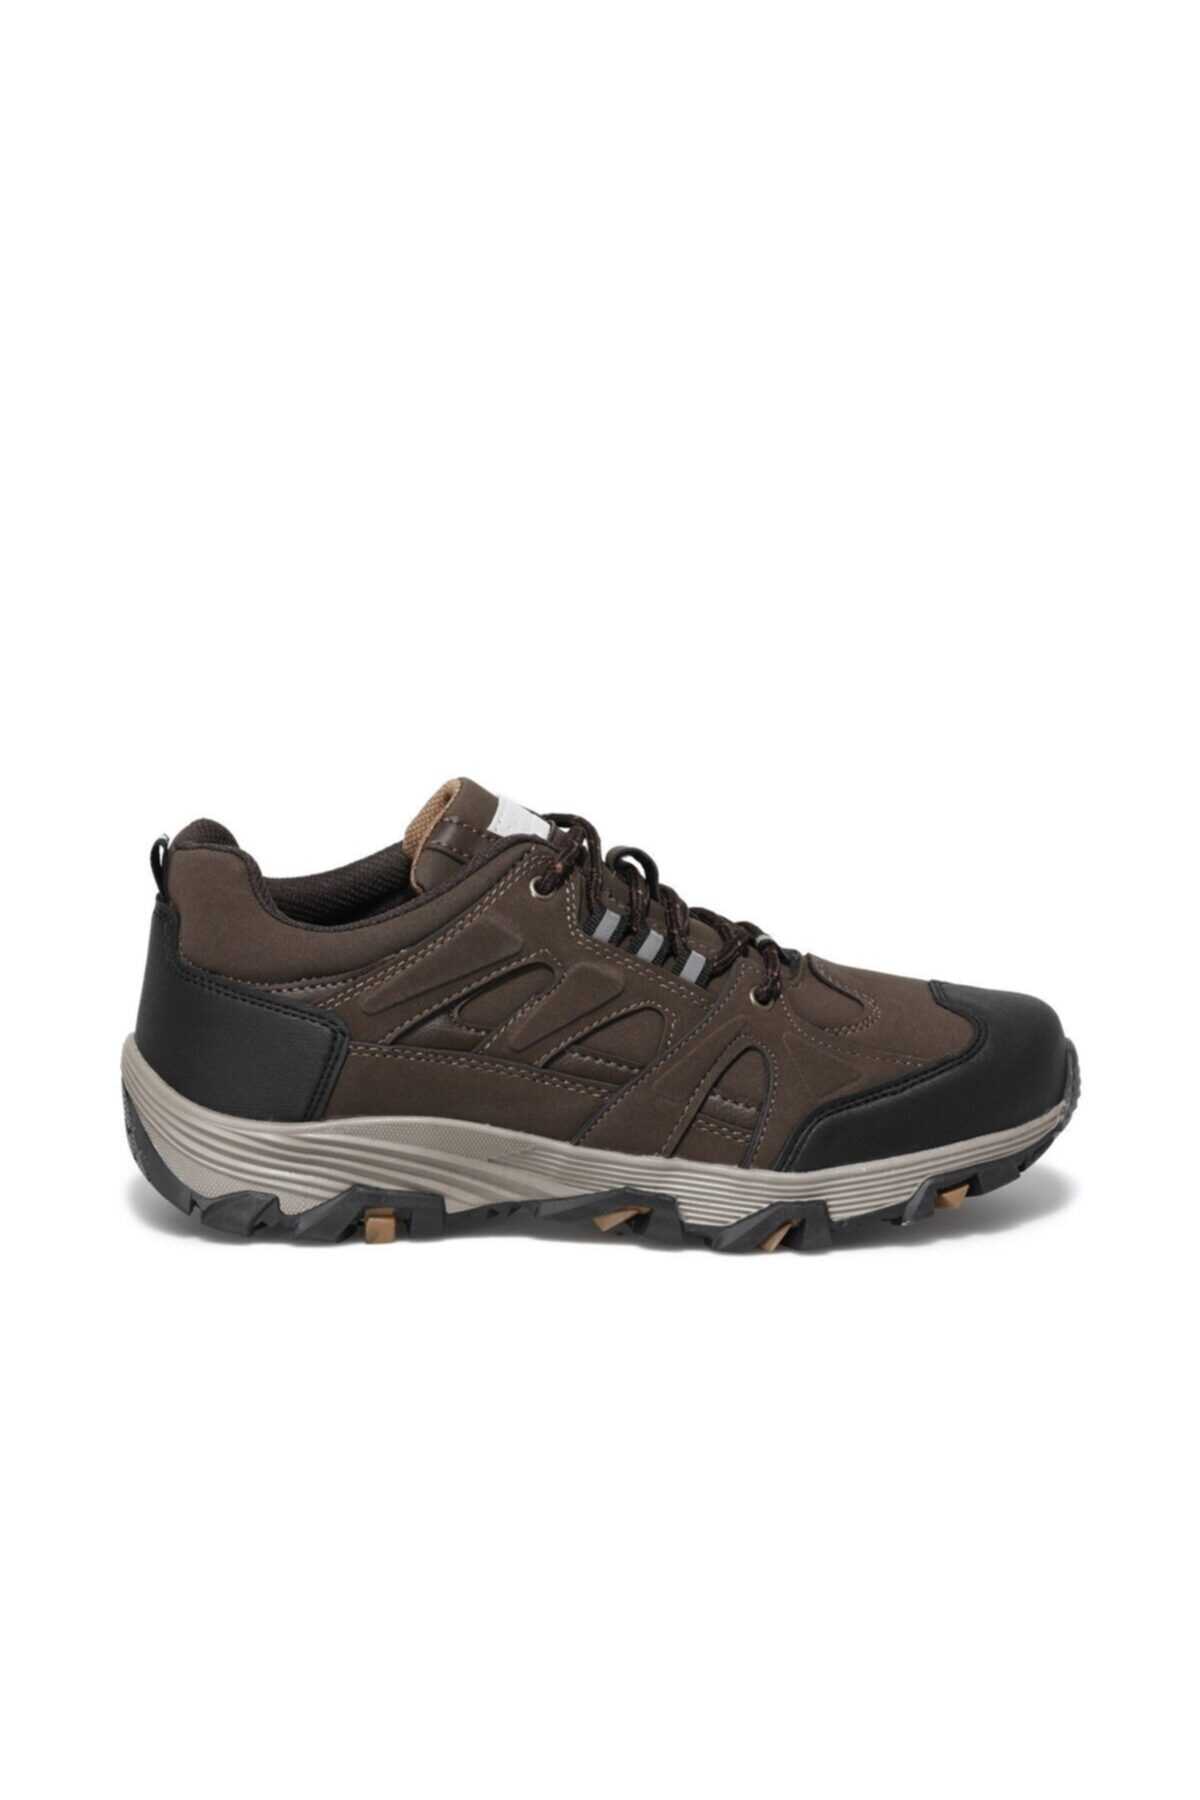 کفش کوهنوردی ارزان برند کینتیکس kinetix رنگ قهوه ای کد ty115632646